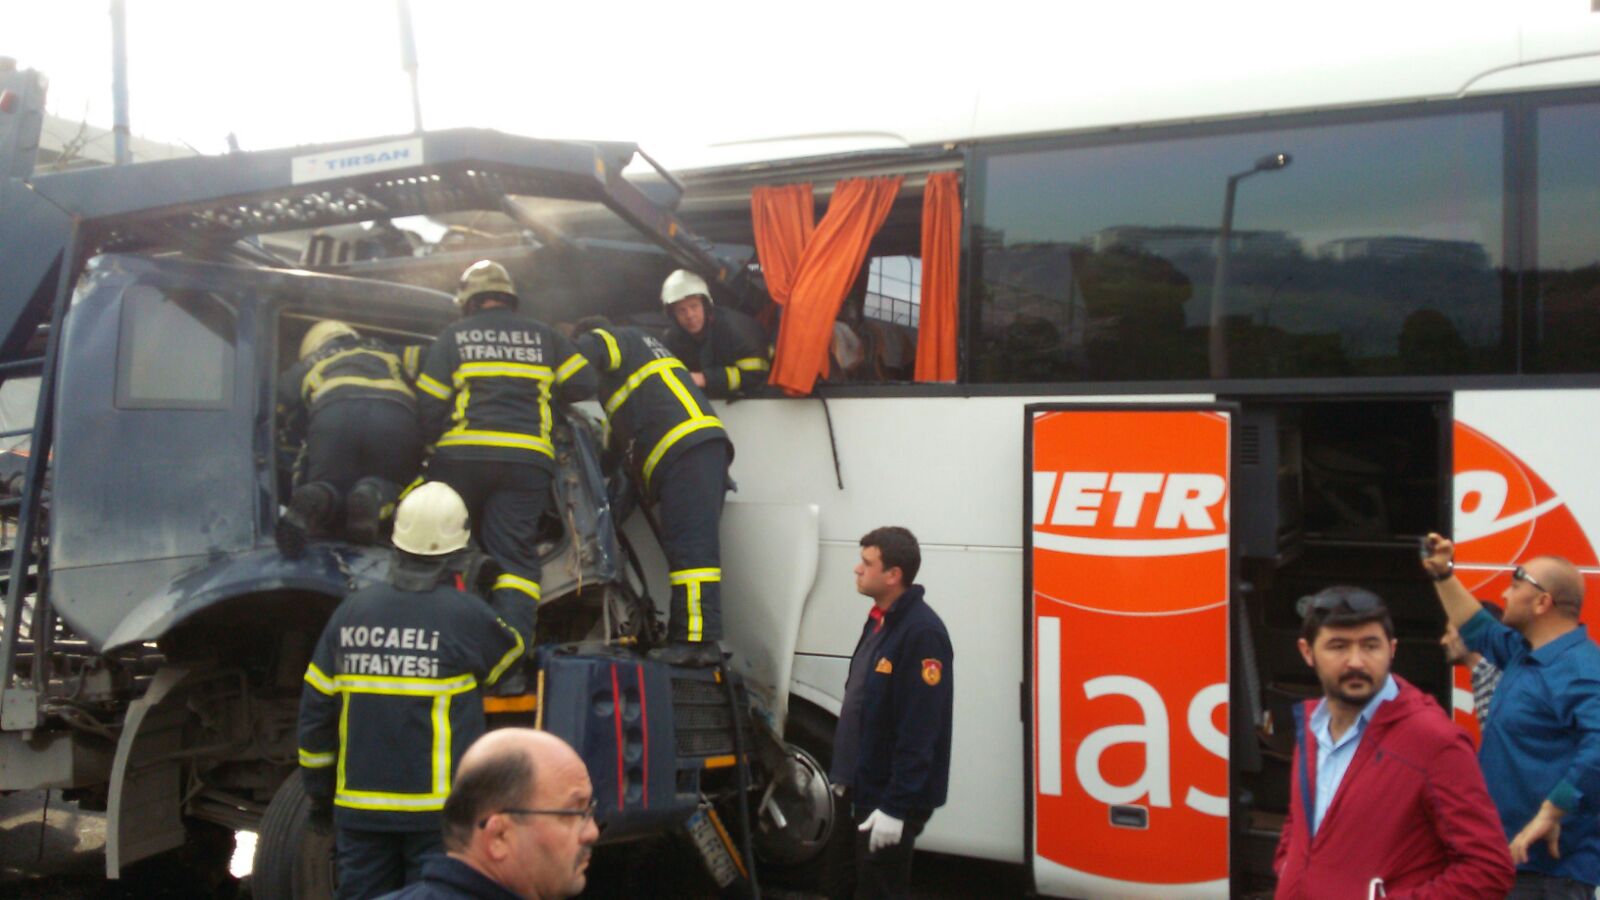 Anadolu Otoyolu’nda zincirleme trafik kazası